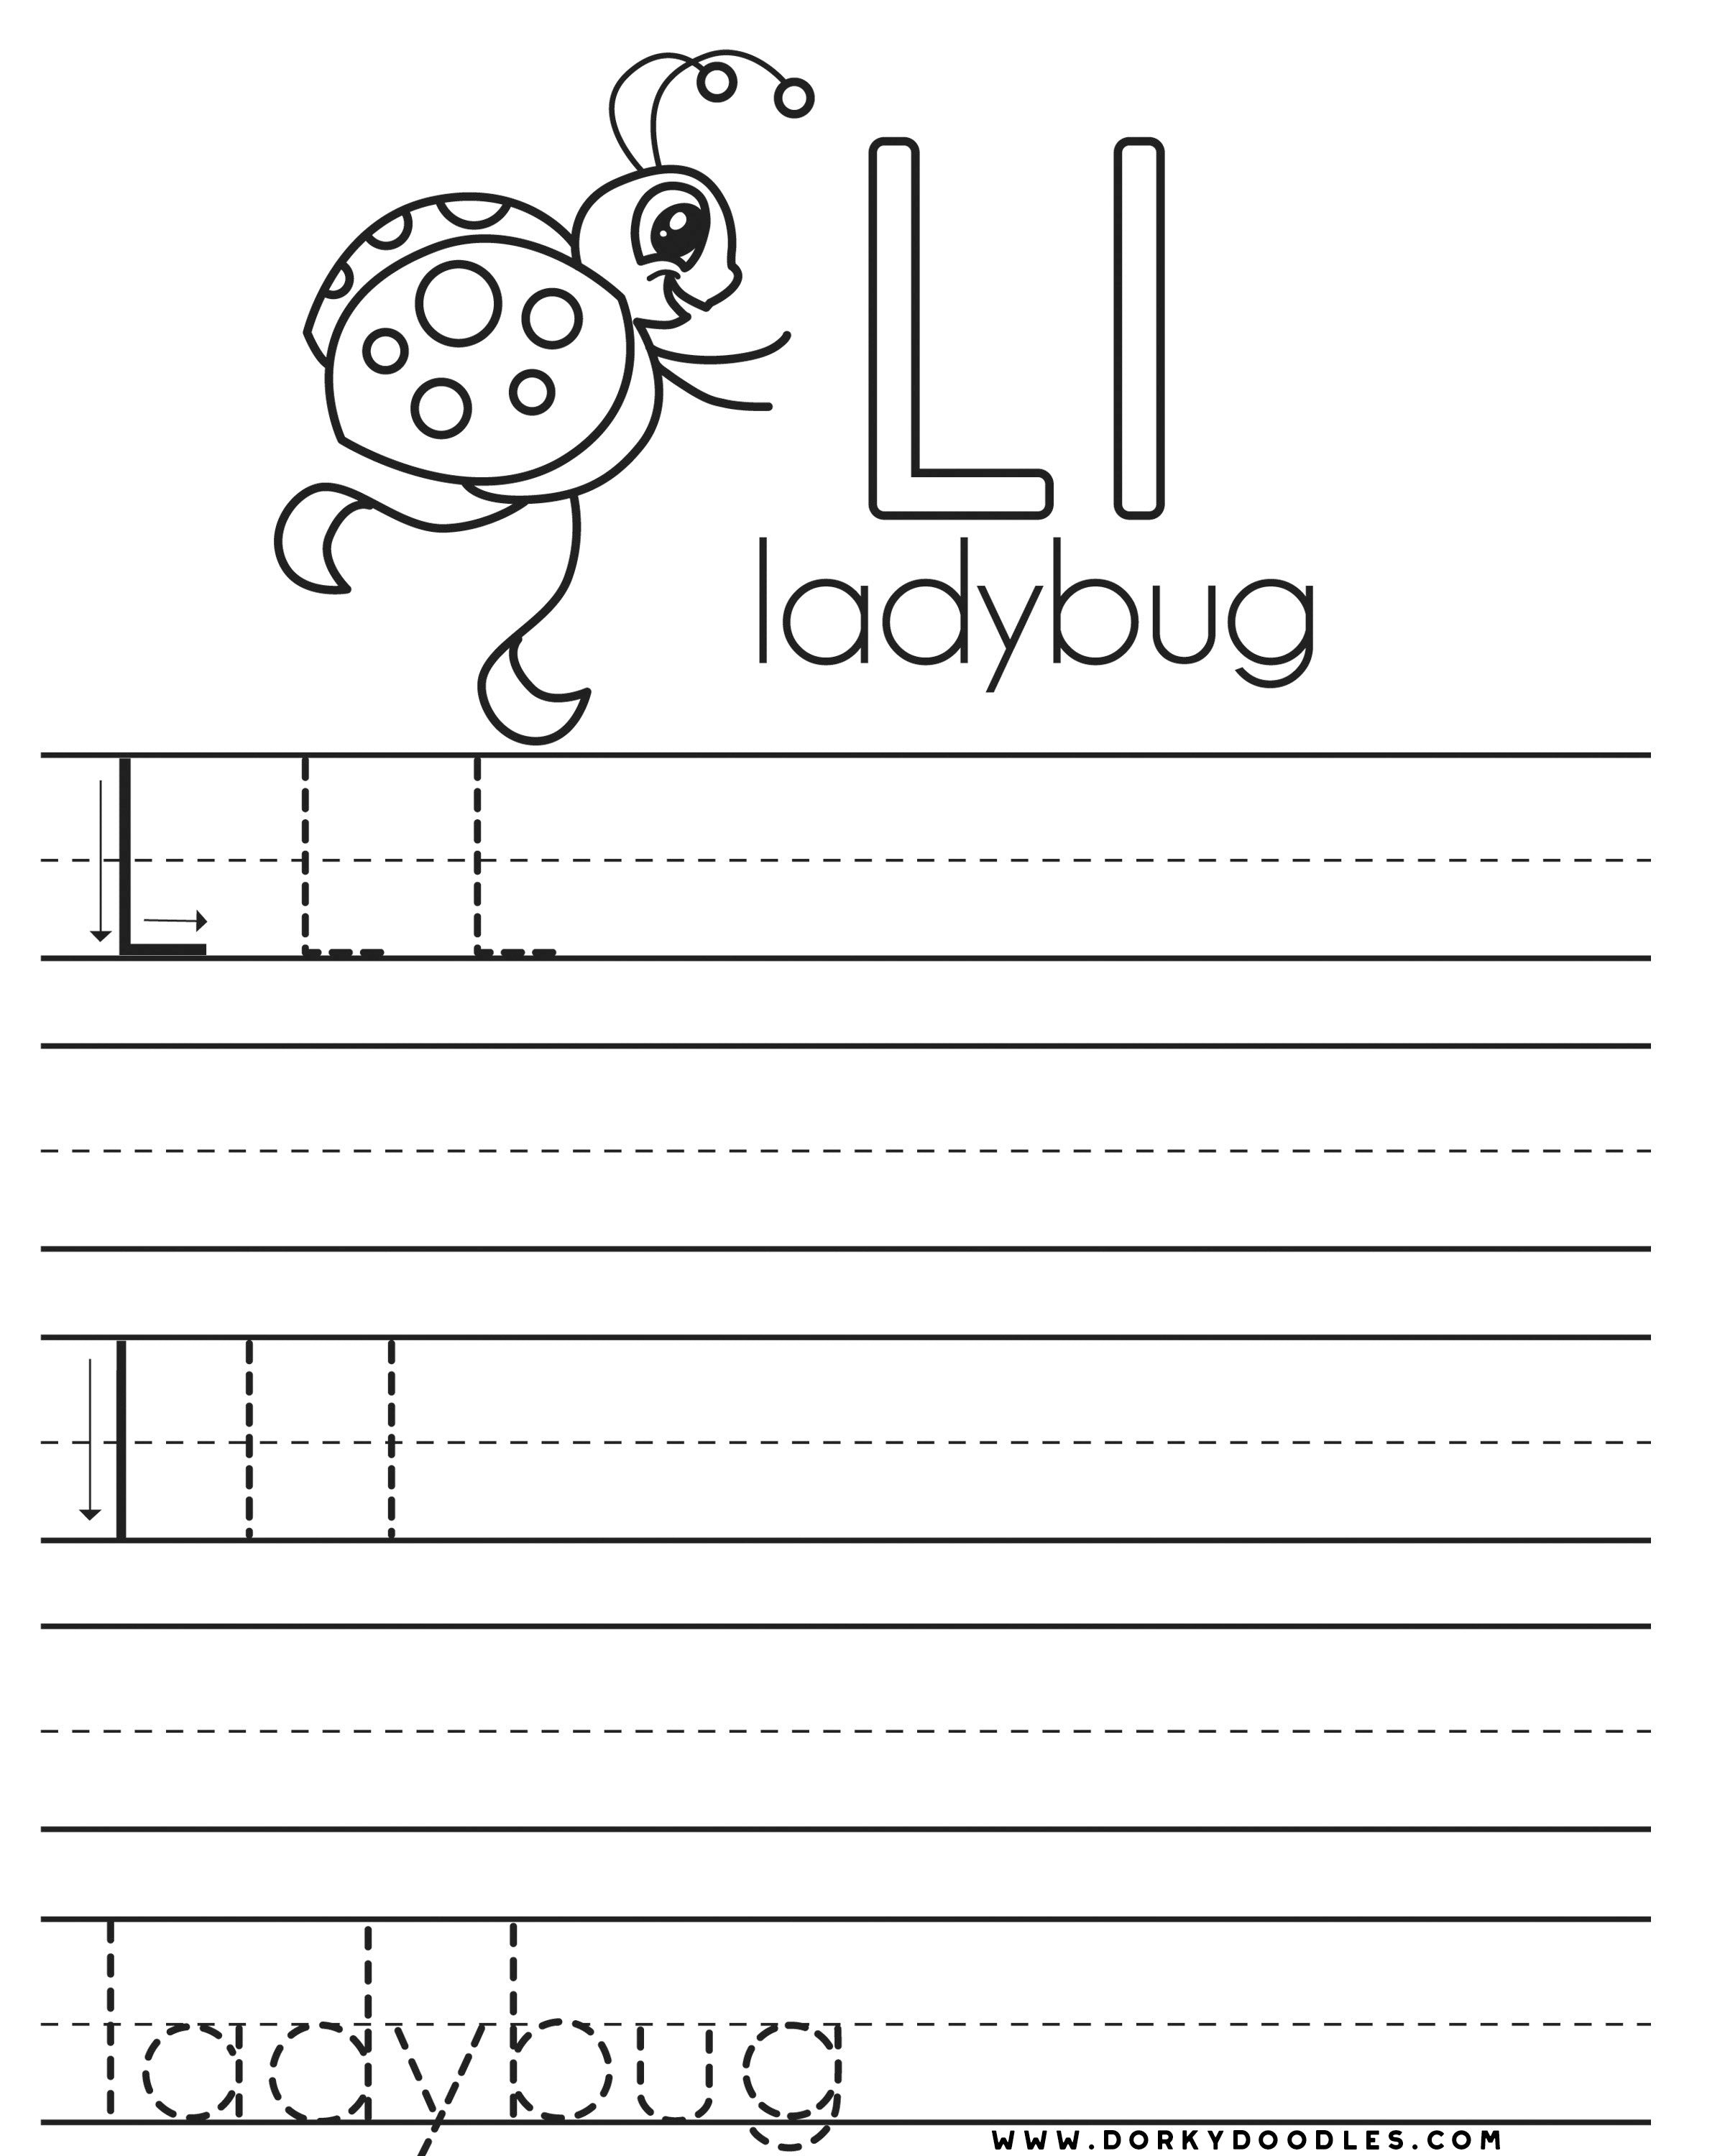 Letter practice l worksheets â dorky doodles